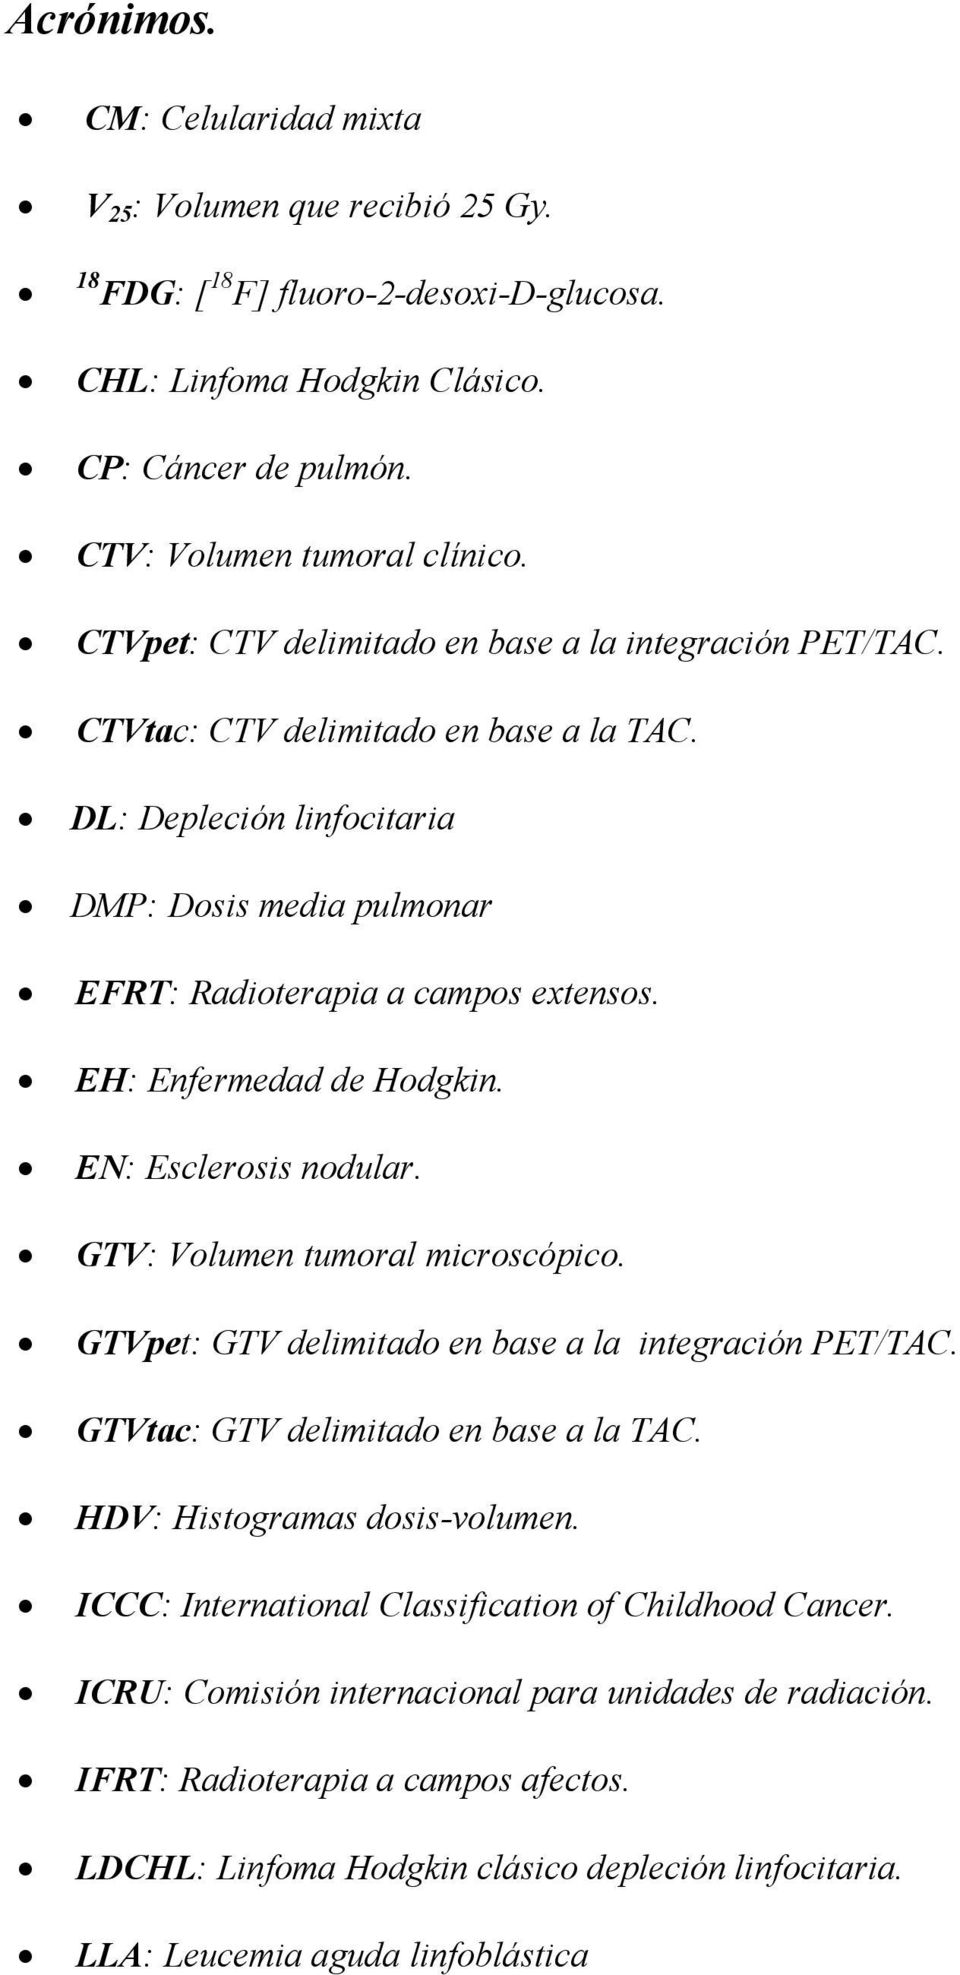 EH: Enfermedad de Hodgkin. EN: Esclerosis nodular. GTV: Volumen tumoral microscópico. GTVpet: GTV delimitado en base a la integración PET/TAC. GTVtac: GTV delimitado en base a la TAC.